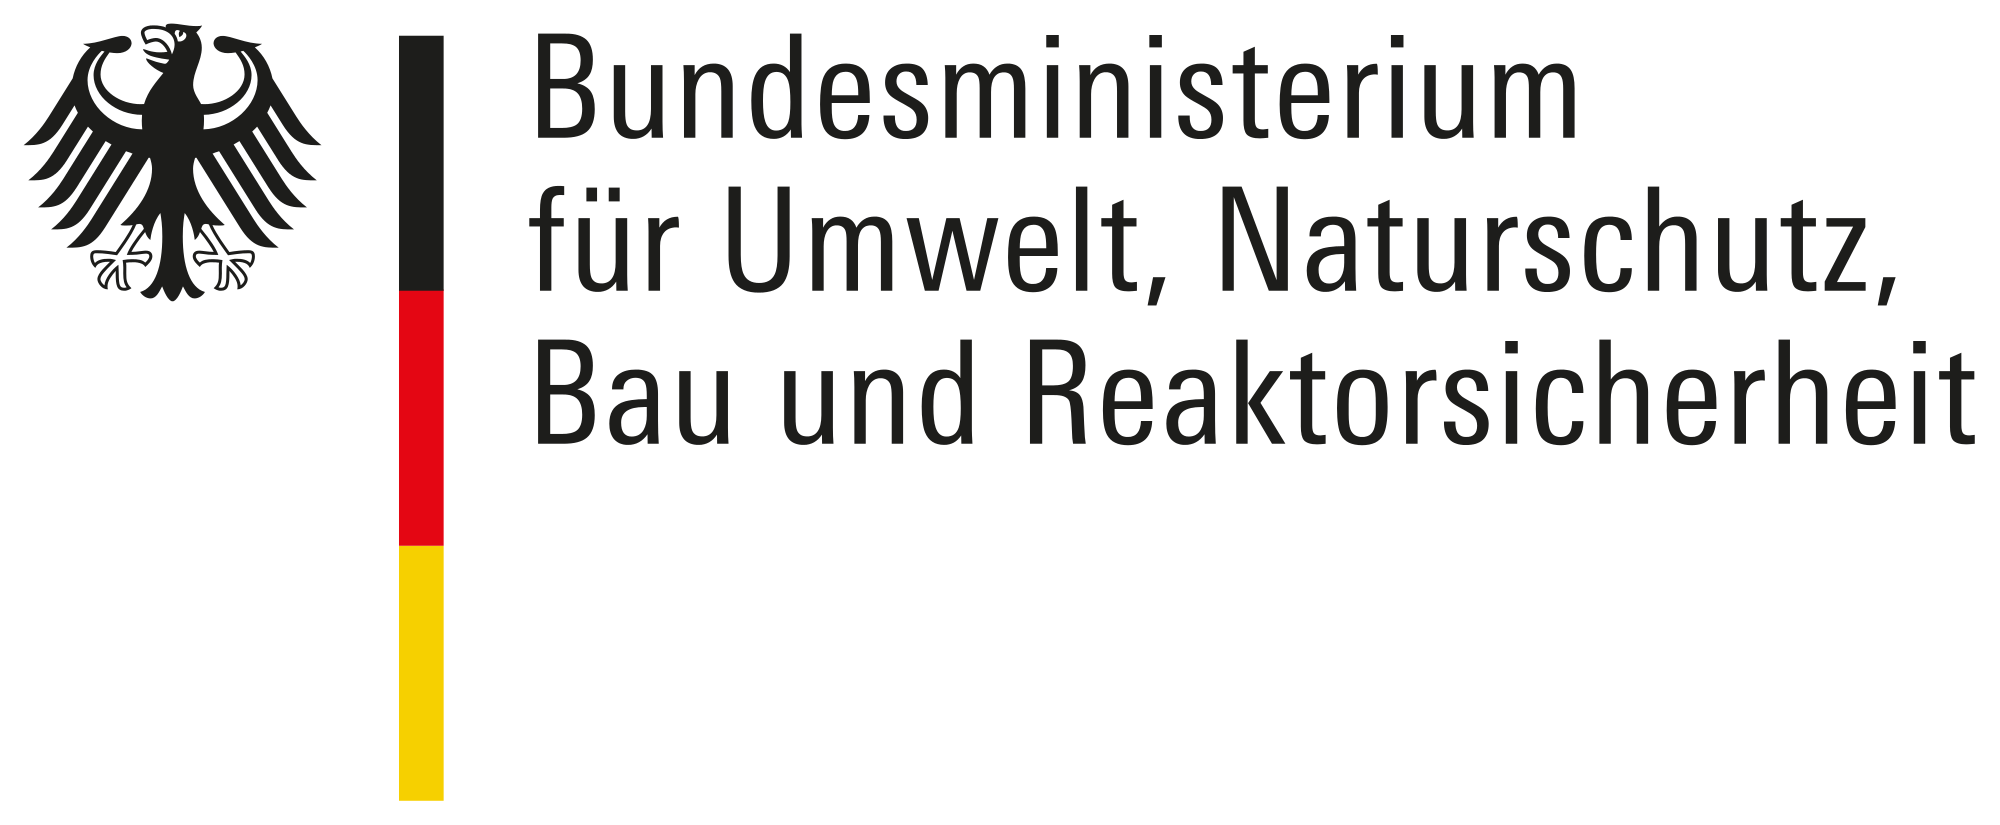 2000px-Bundesministerium_für_Umwelt,_Naturschutz,_Bau_und_Reaktorsicherheit_Logo.svg.png